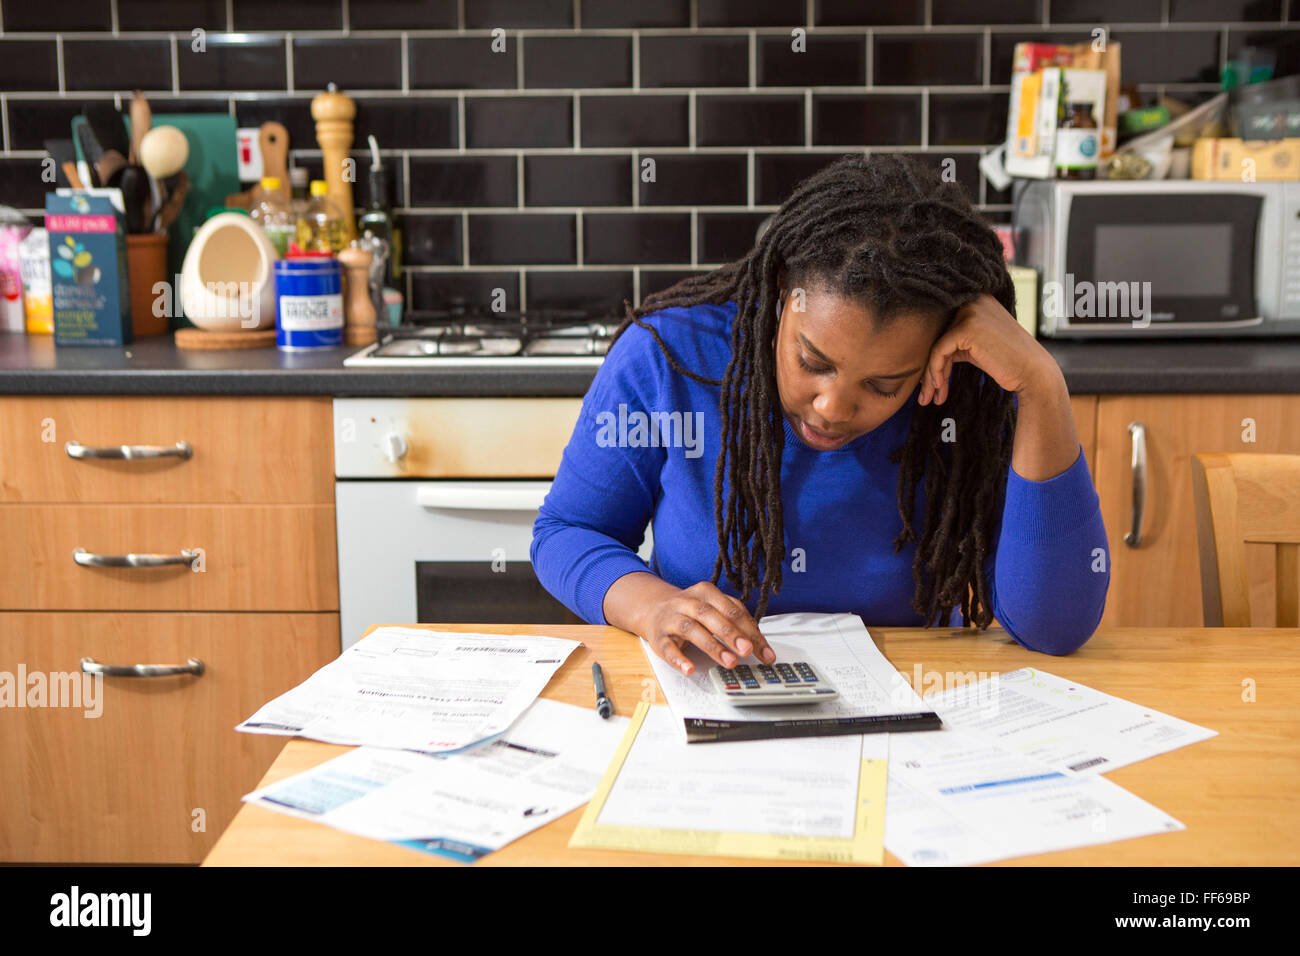 Eine junge Frau sitzt an ihrem Küchentisch zu Hause überprüfen über die Haushaltsrechnungen. Umgang mit Schulden. Haushalt Stromrechnungen, so dass es schwierig für eine britische Eigenheimzulage zu leisten. Schwierigkeiten Gas- und Stromrechnungen zu bezahlen ist üblich, da der wirtschaftliche Abschwung persönliche Finanzen spüren macht. London, UK. Stockfoto